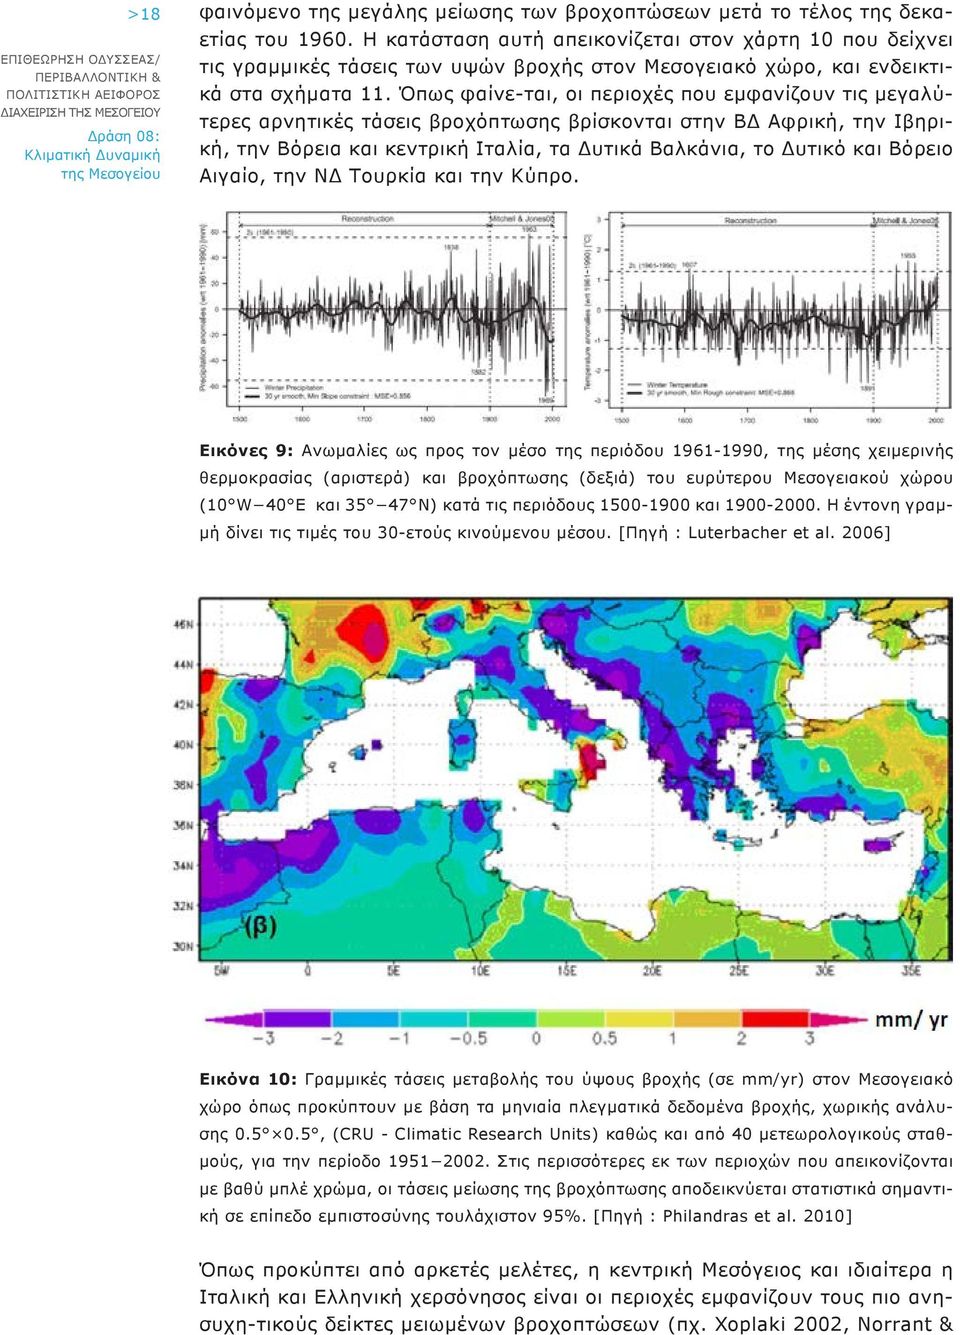 Όπως φαίνε-ται, οι περιοχές που εμφανίζουν τις μεγαλύτερες αρνητικές τάσεις βροχόπτωσης βρίσκονται στην ΒΔ Αφρική, την Ιβηρική, την Βόρεια και κεντρική Ιταλία, τα Δυτικά Βαλκάνια, το Δυτικό και